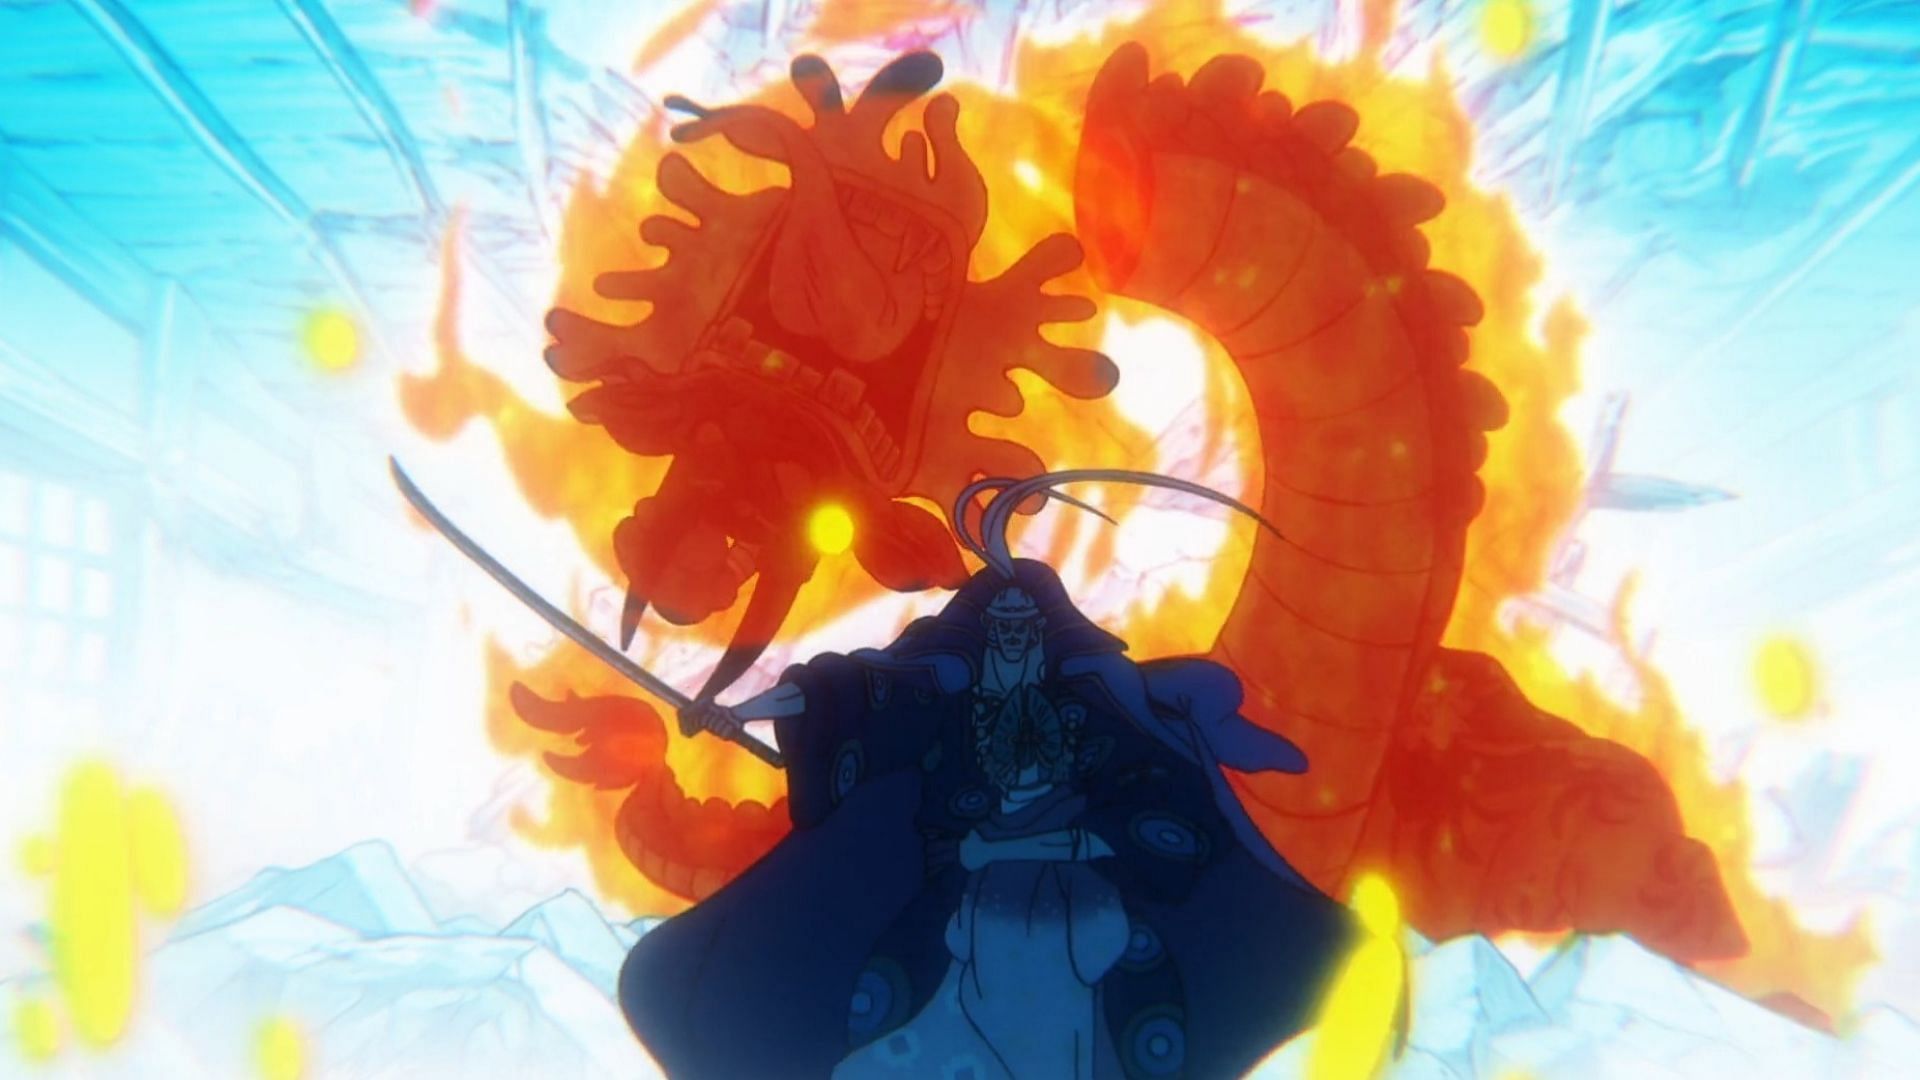 Denjiro tue Orochi comme on le voit dans l'épisode 1075 de One Piece (Image via Toei Animation)